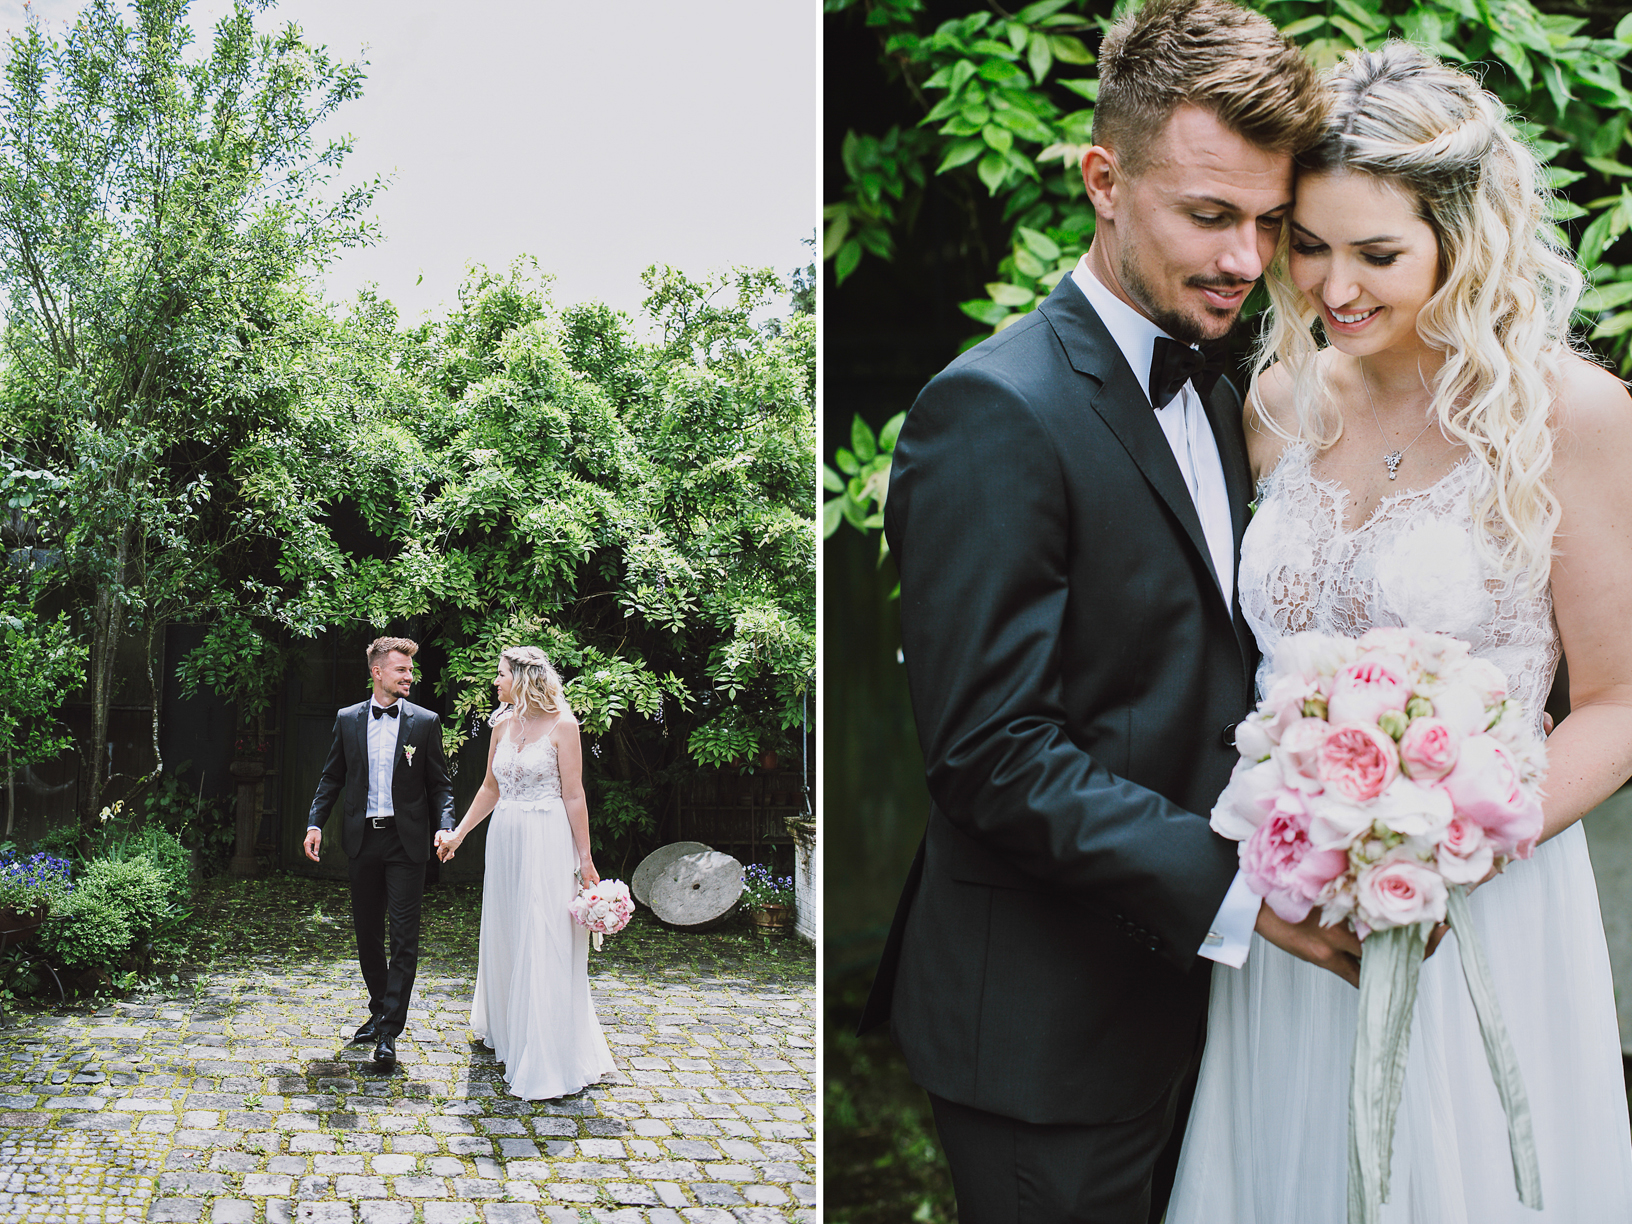 Die Hochzeit von Ronny und Patrizia Philp in der Alten Gärtnerei in Taufkirchen mit einem Brautkleid von Kaviar Gauche und Rockstuds von Valentino